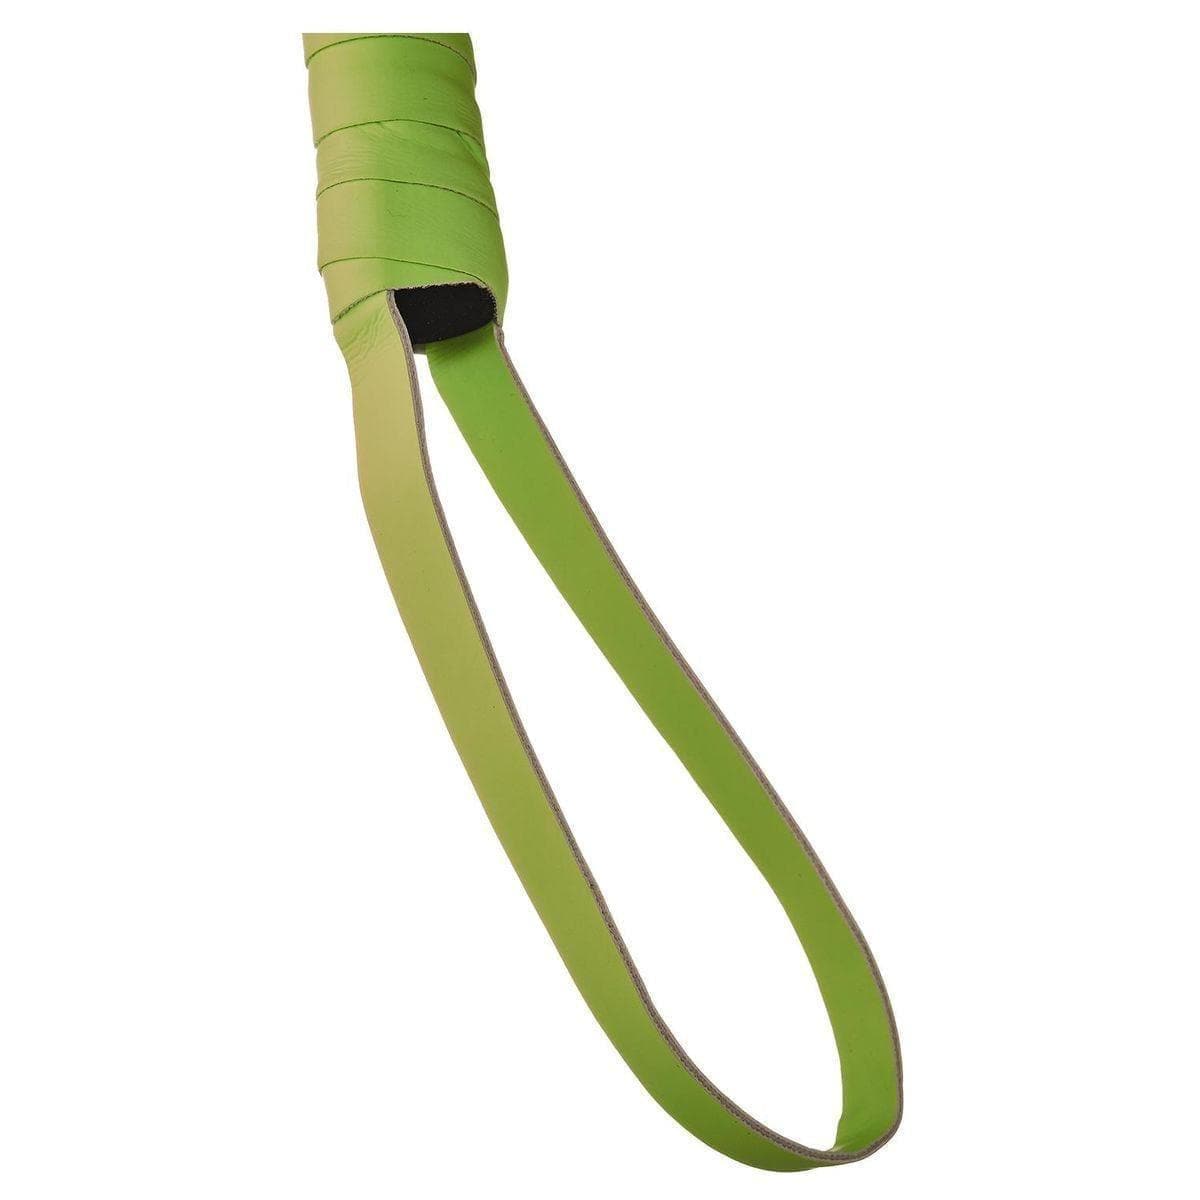 Radiant – Flogger Verde Fluorescente, 30cm  Radiant - Dream Toys   